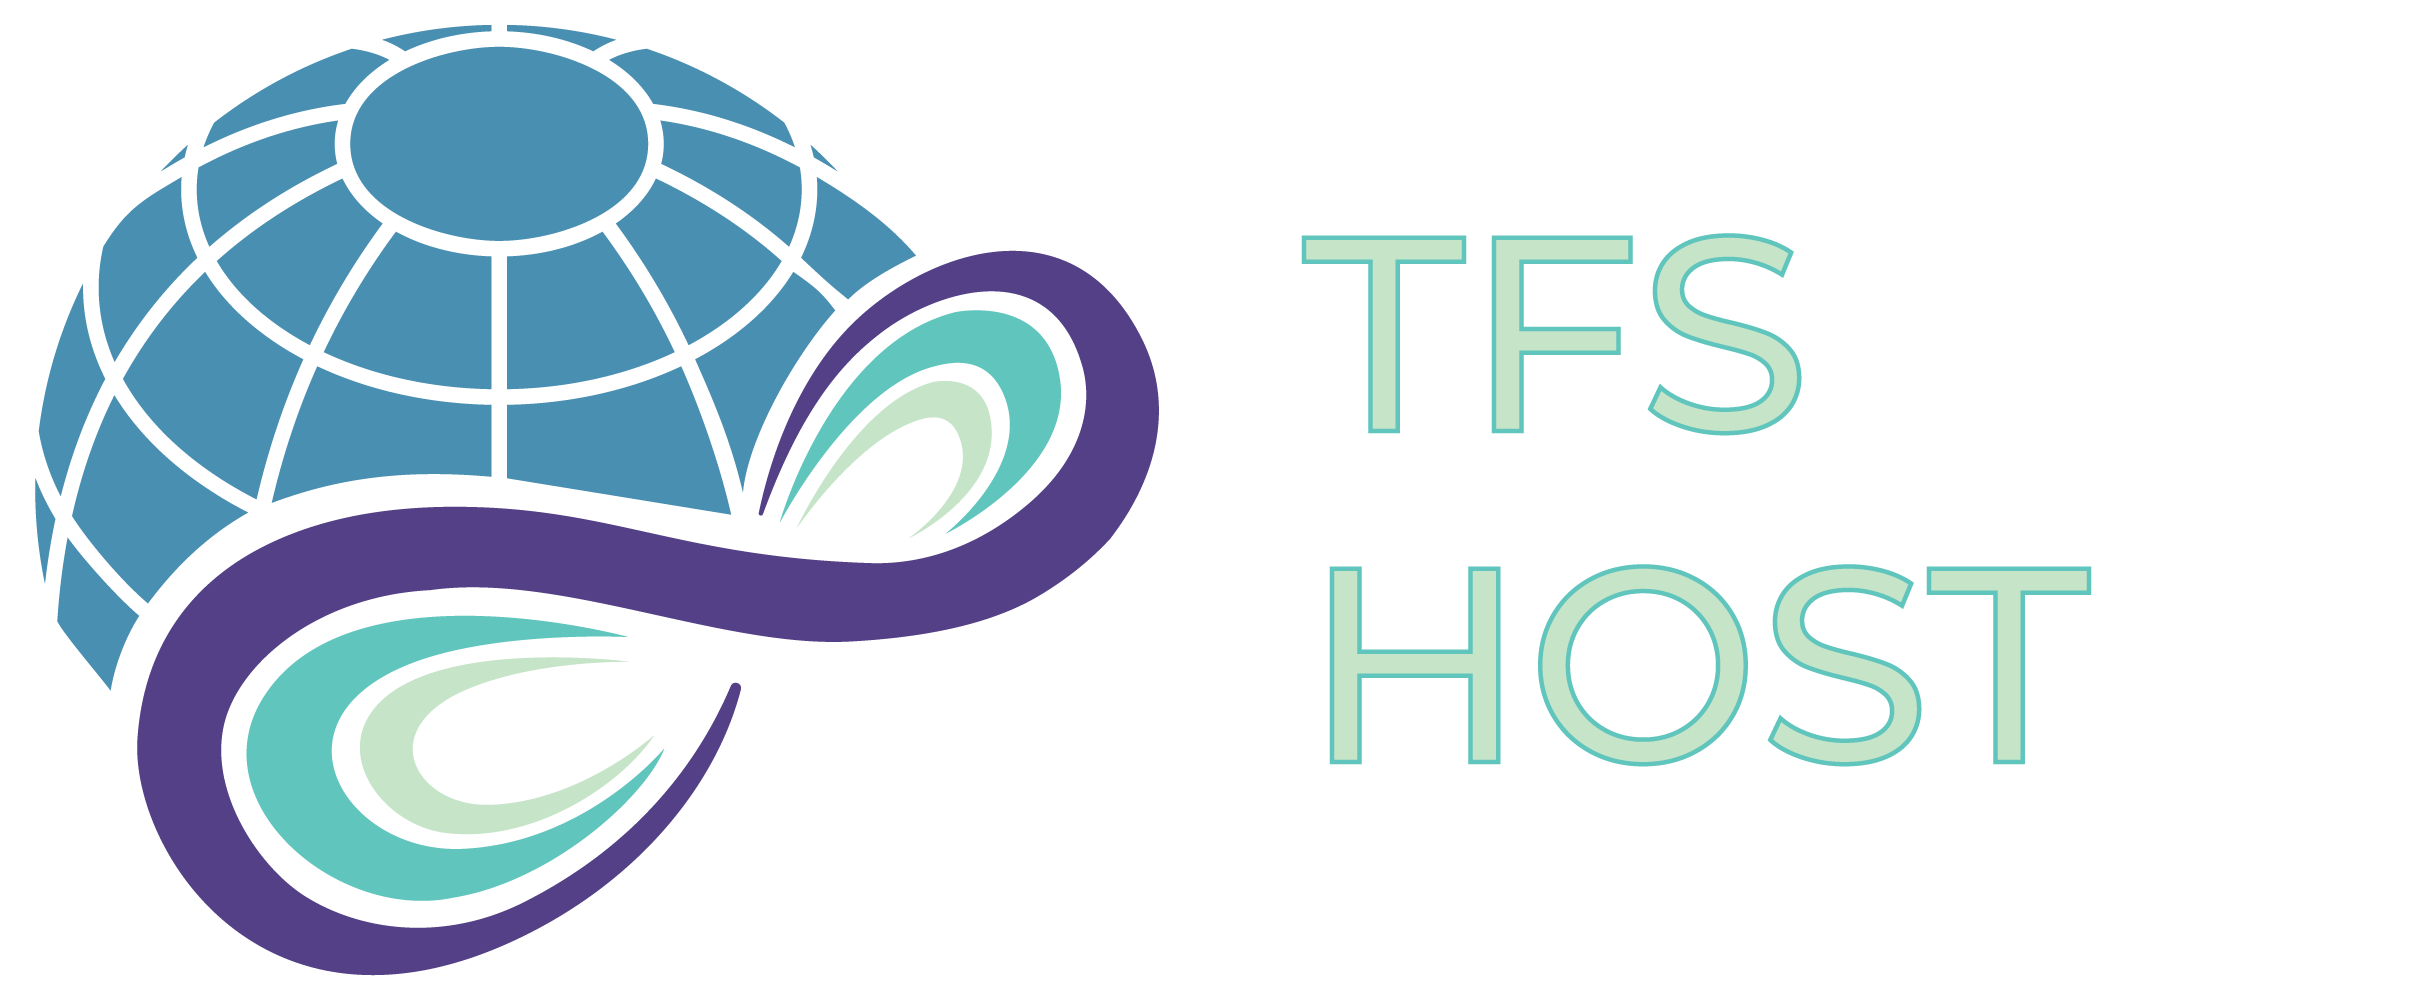 TFS Host